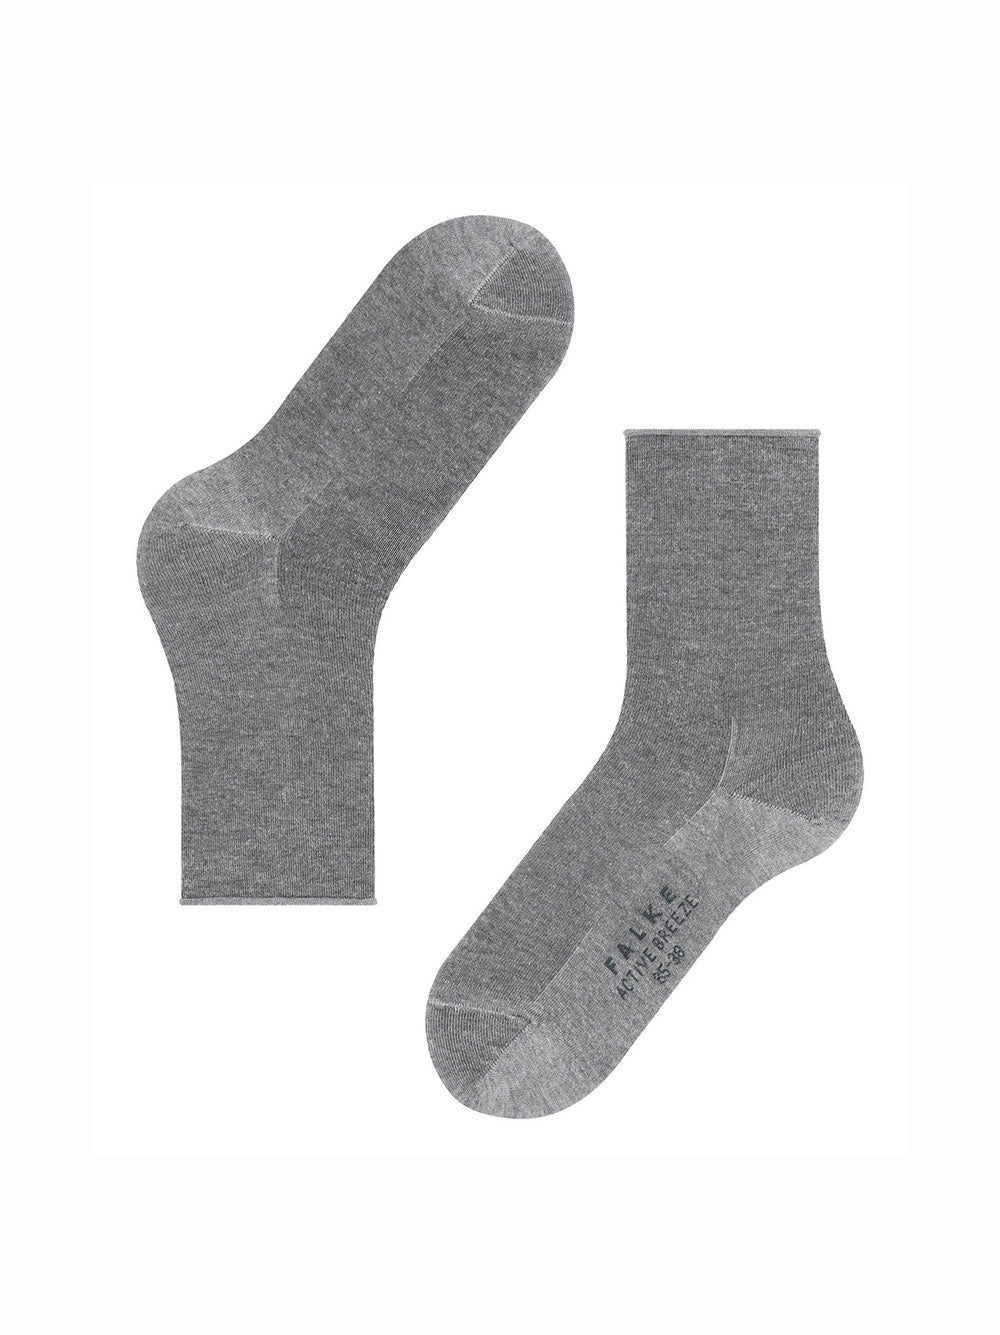 FALKE Active Breeze socks for women